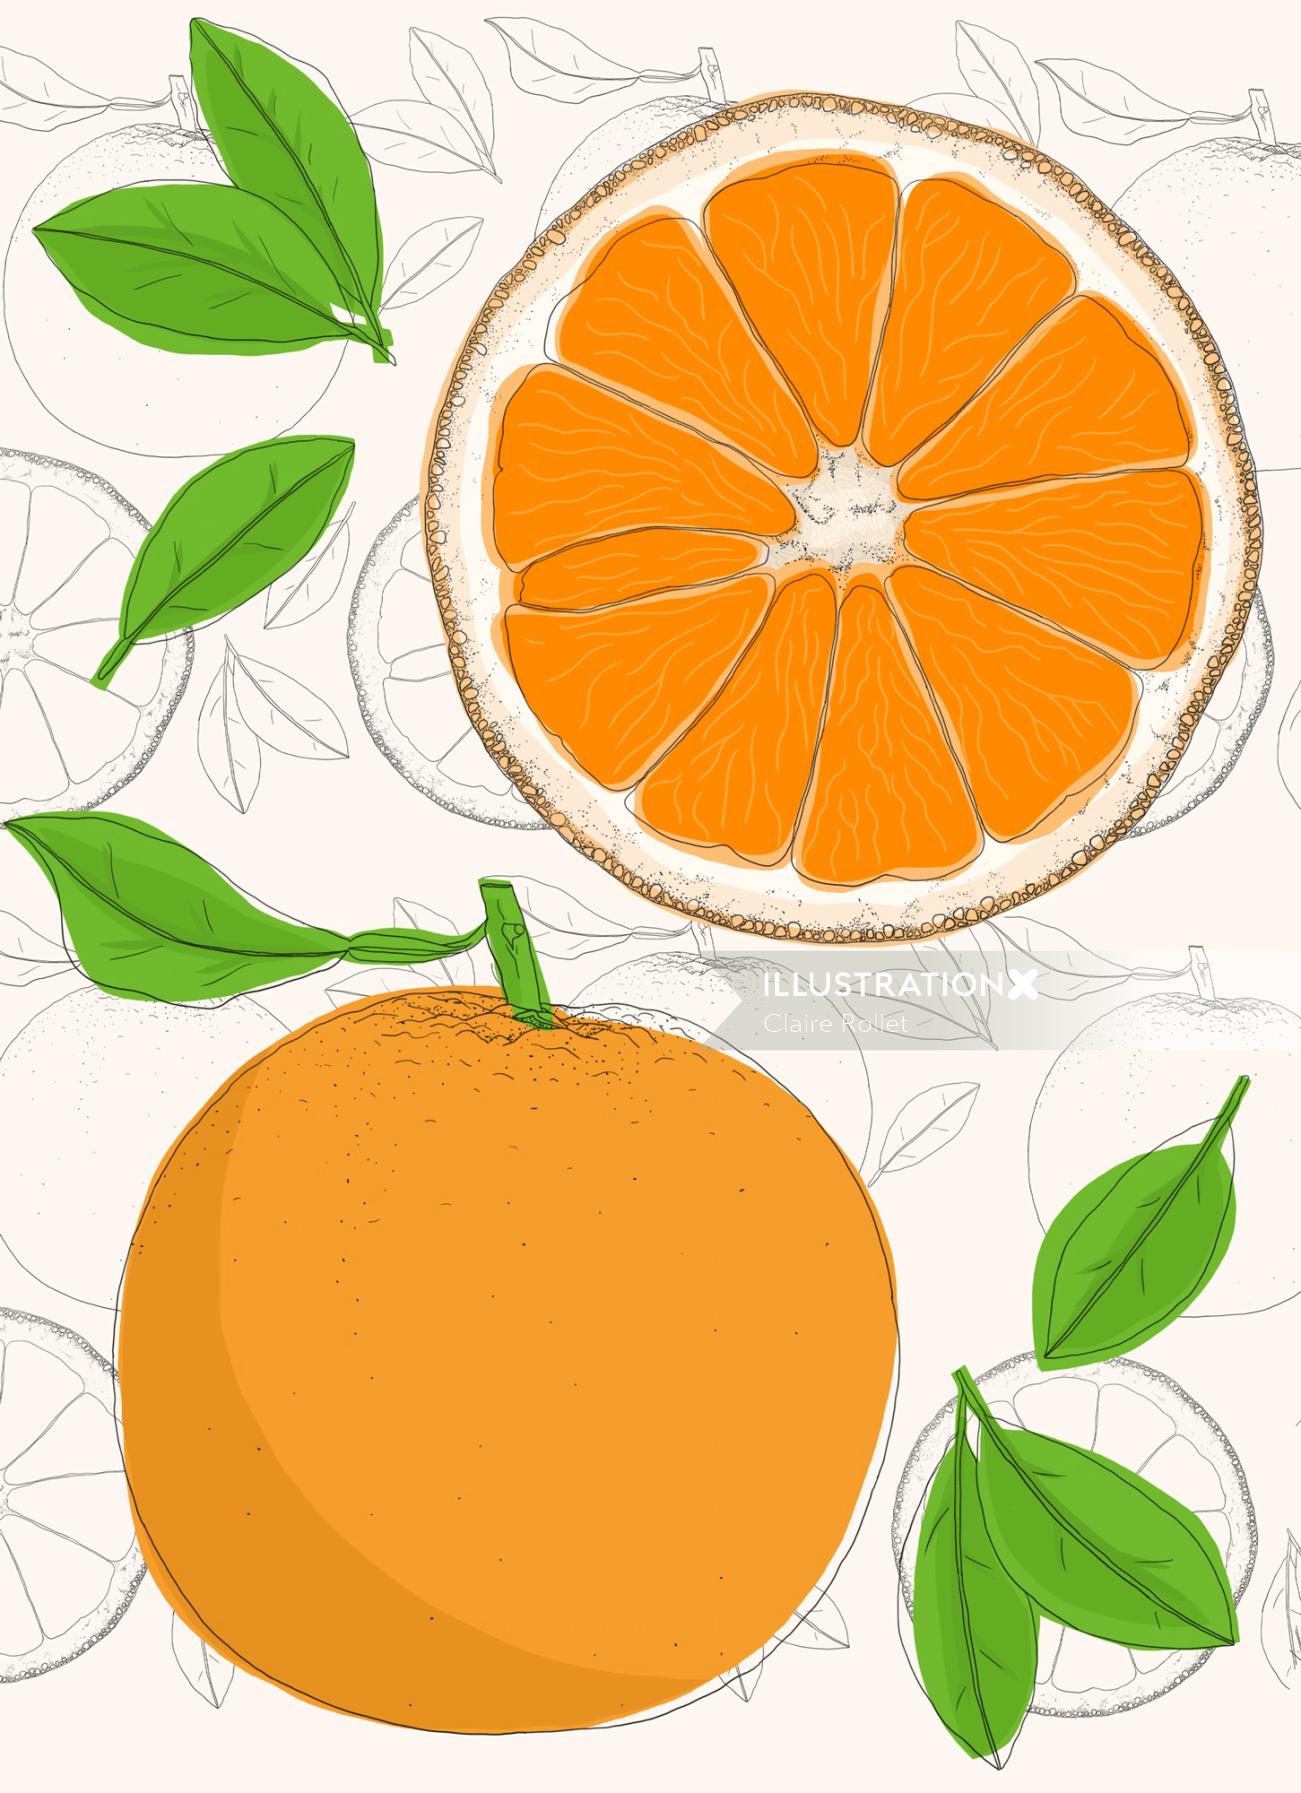 Anatomía ilustrada de la fruta naranja.